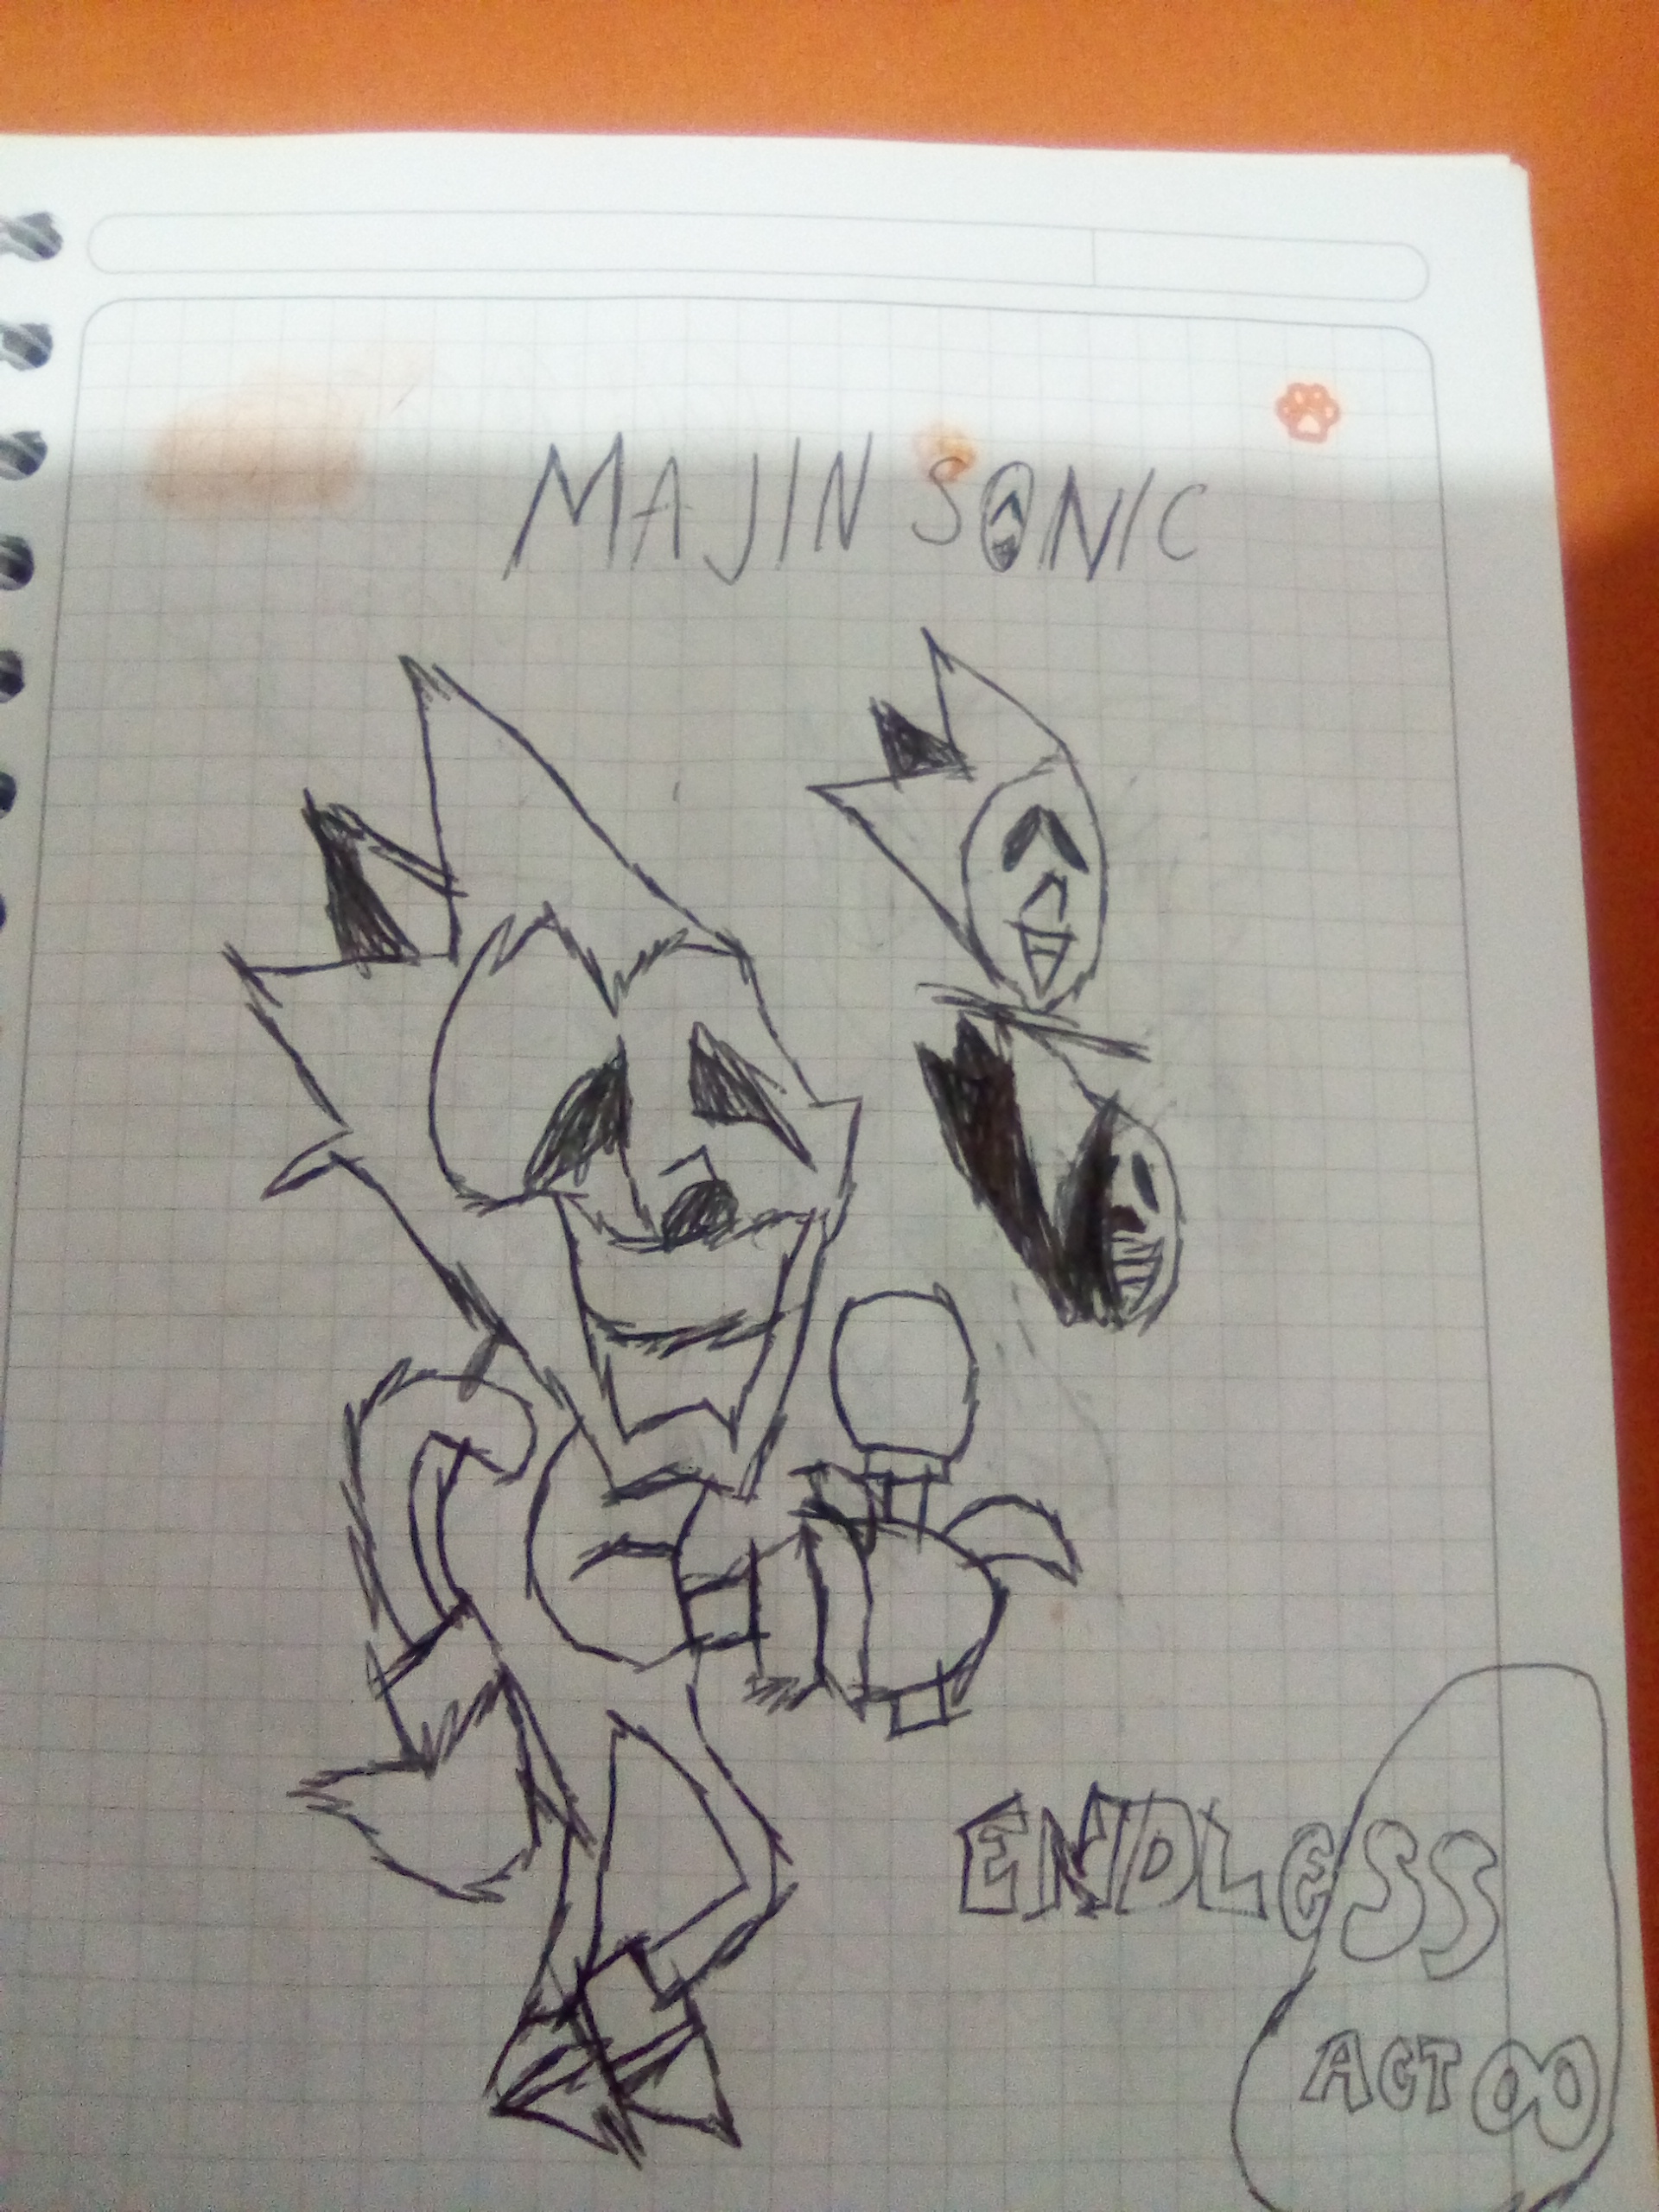 Majin Sonic fanart Re-draw by ColorArtAndBolb on DeviantArt